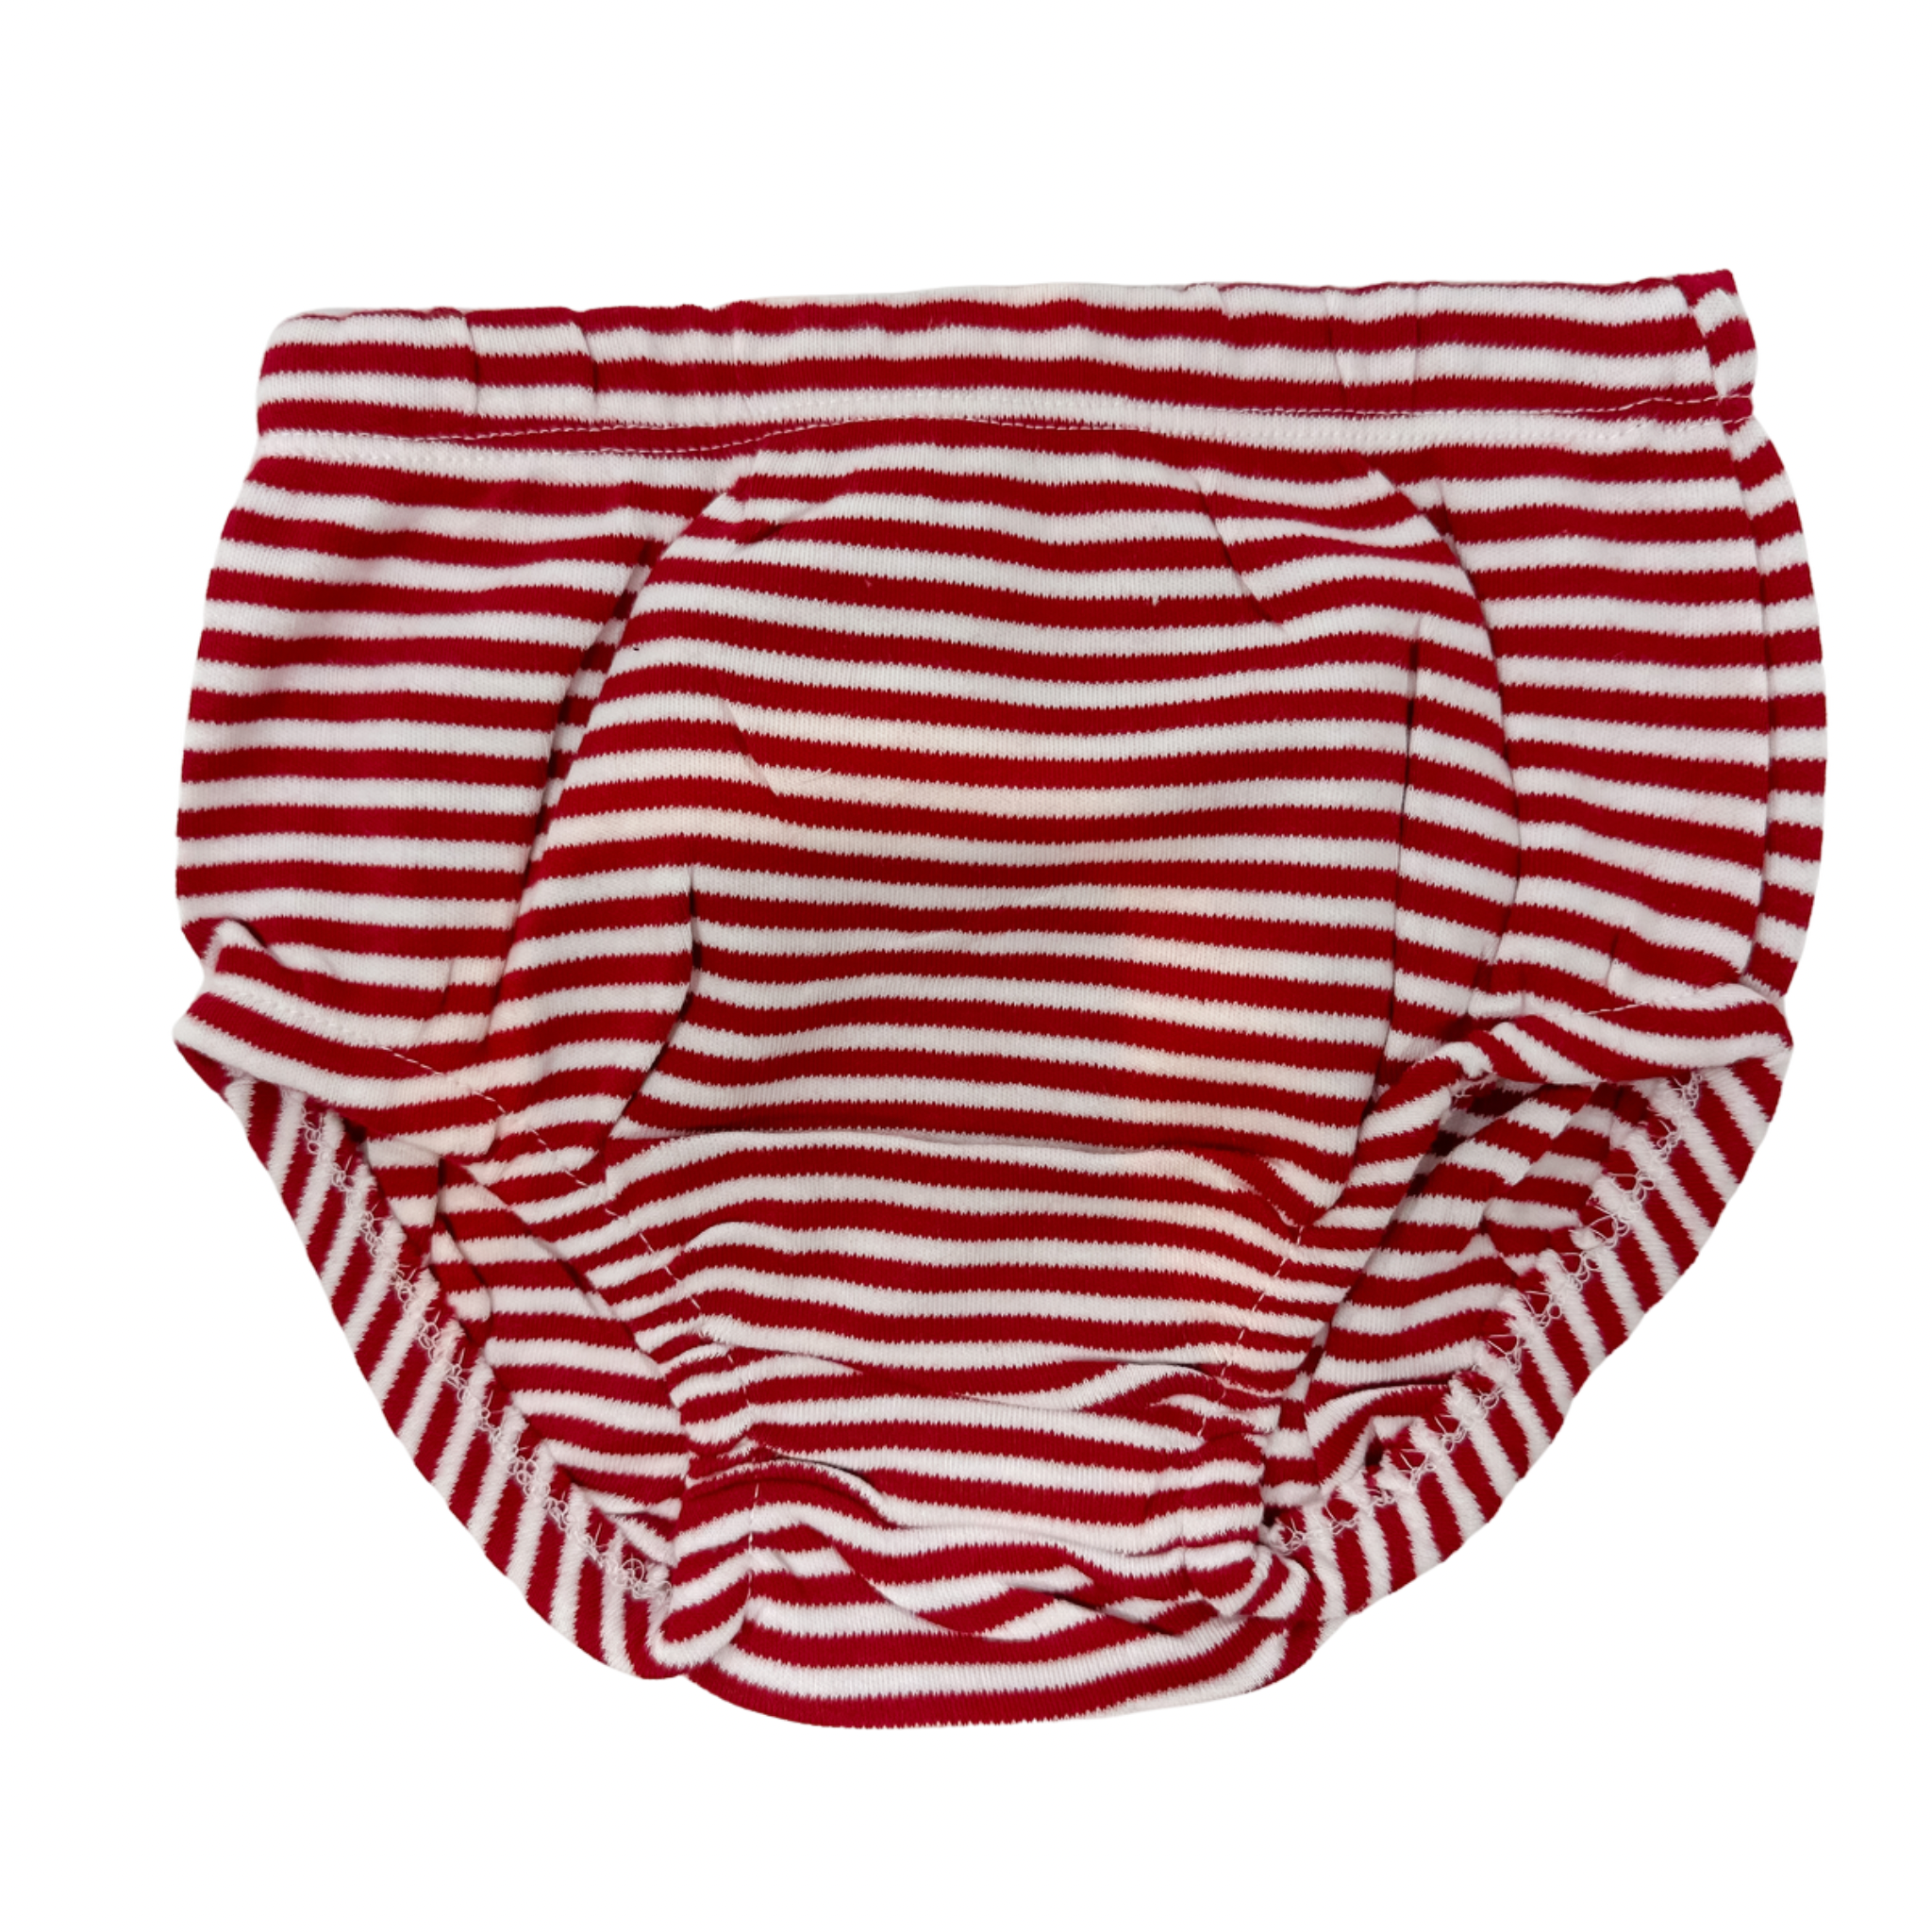 Creative Knitwear - Stripe Dress/ Bloomer - Bama Crimson